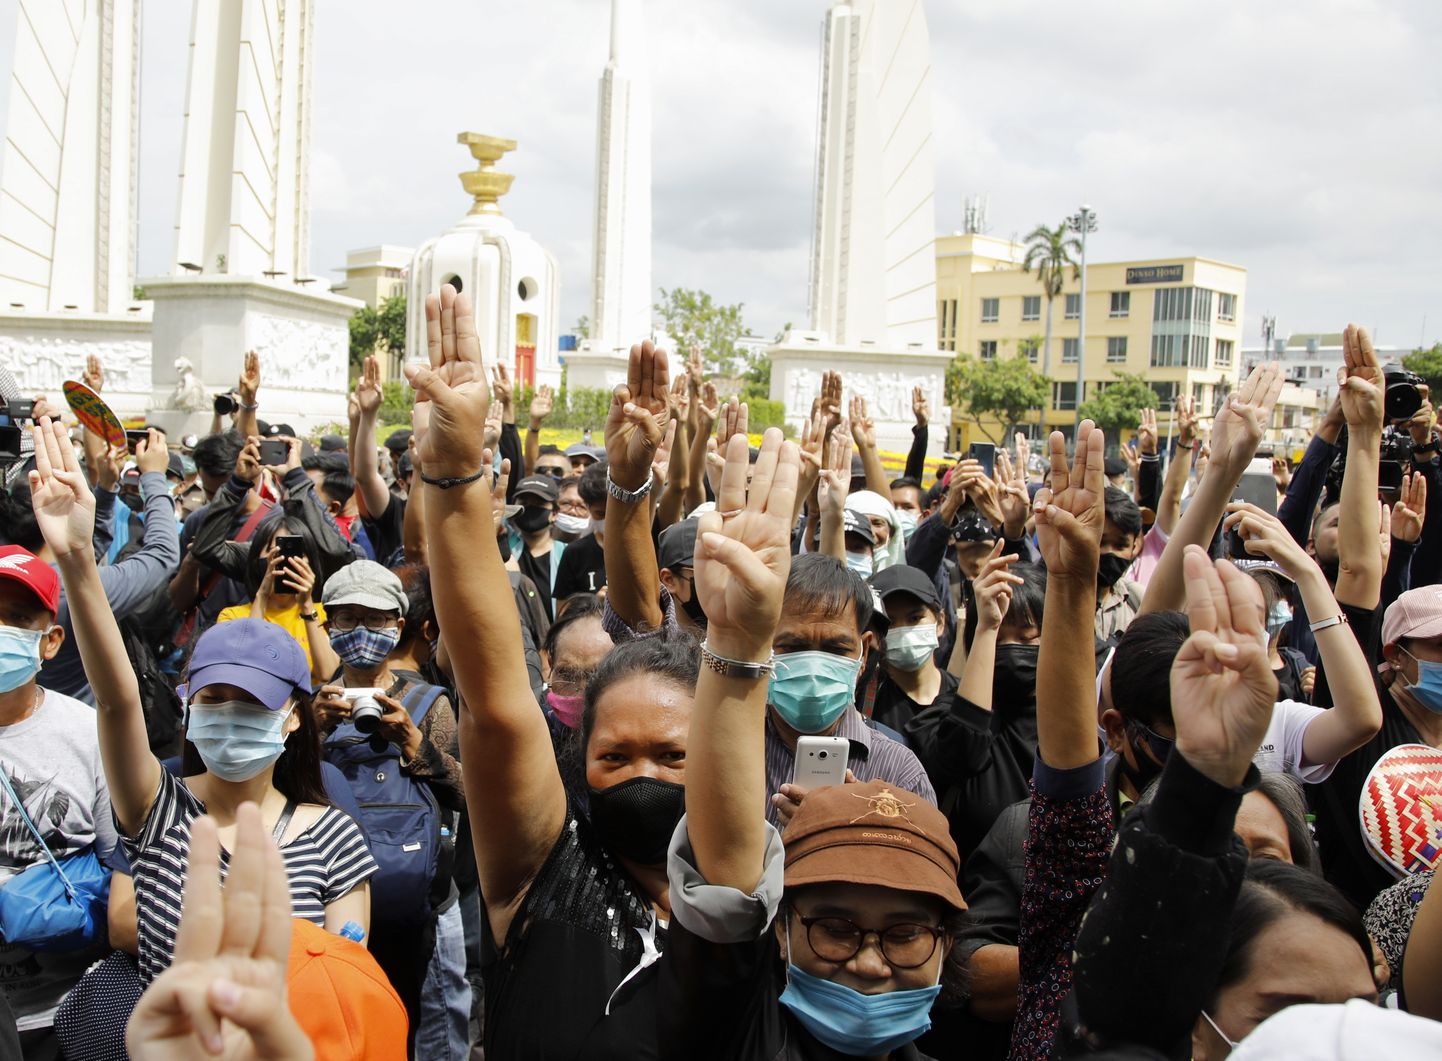 Tai meeleavaldajad näitavad kolmesõrmelist tervitust valitsusvastasel meeleavaldusel, kuhu oli kogunenud politsei teatel kümme tuhat inimest, kes protestivad rojalistliku eliidi ja sõjalise toetusega valitsuse vastu, nõudes ulatuslikke demokraatiameelseid reforme.